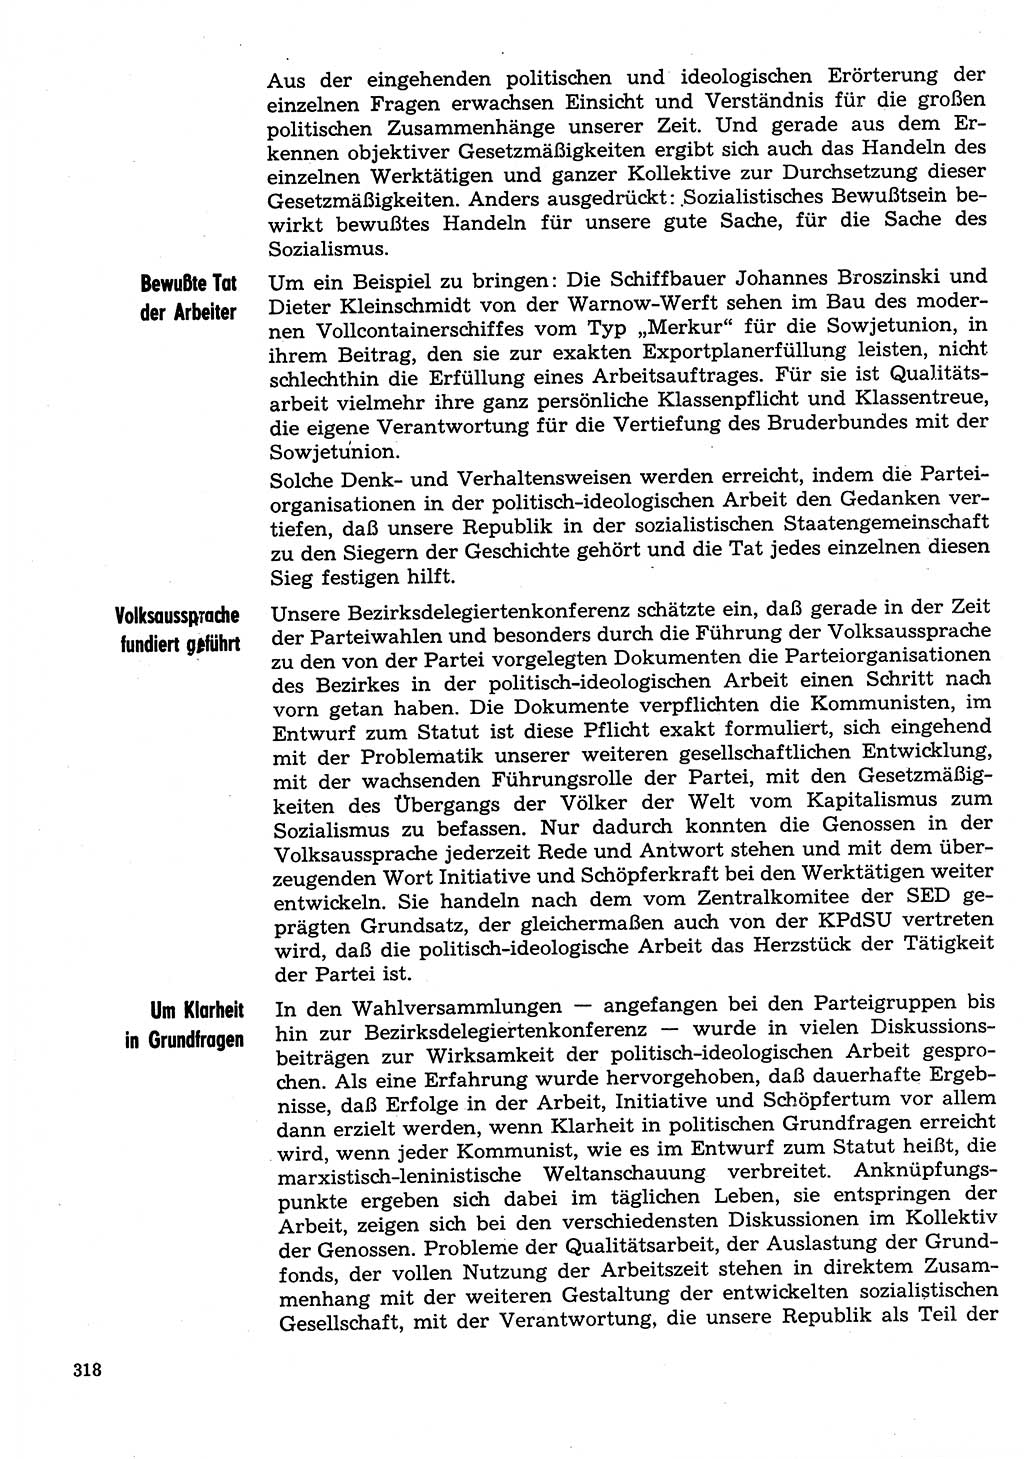 Neuer Weg (NW), Organ des Zentralkomitees (ZK) der SED (Sozialistische Einheitspartei Deutschlands) für Fragen des Parteilebens, 31. Jahrgang [Deutsche Demokratische Republik (DDR)] 1976, Seite 318 (NW ZK SED DDR 1976, S. 318)